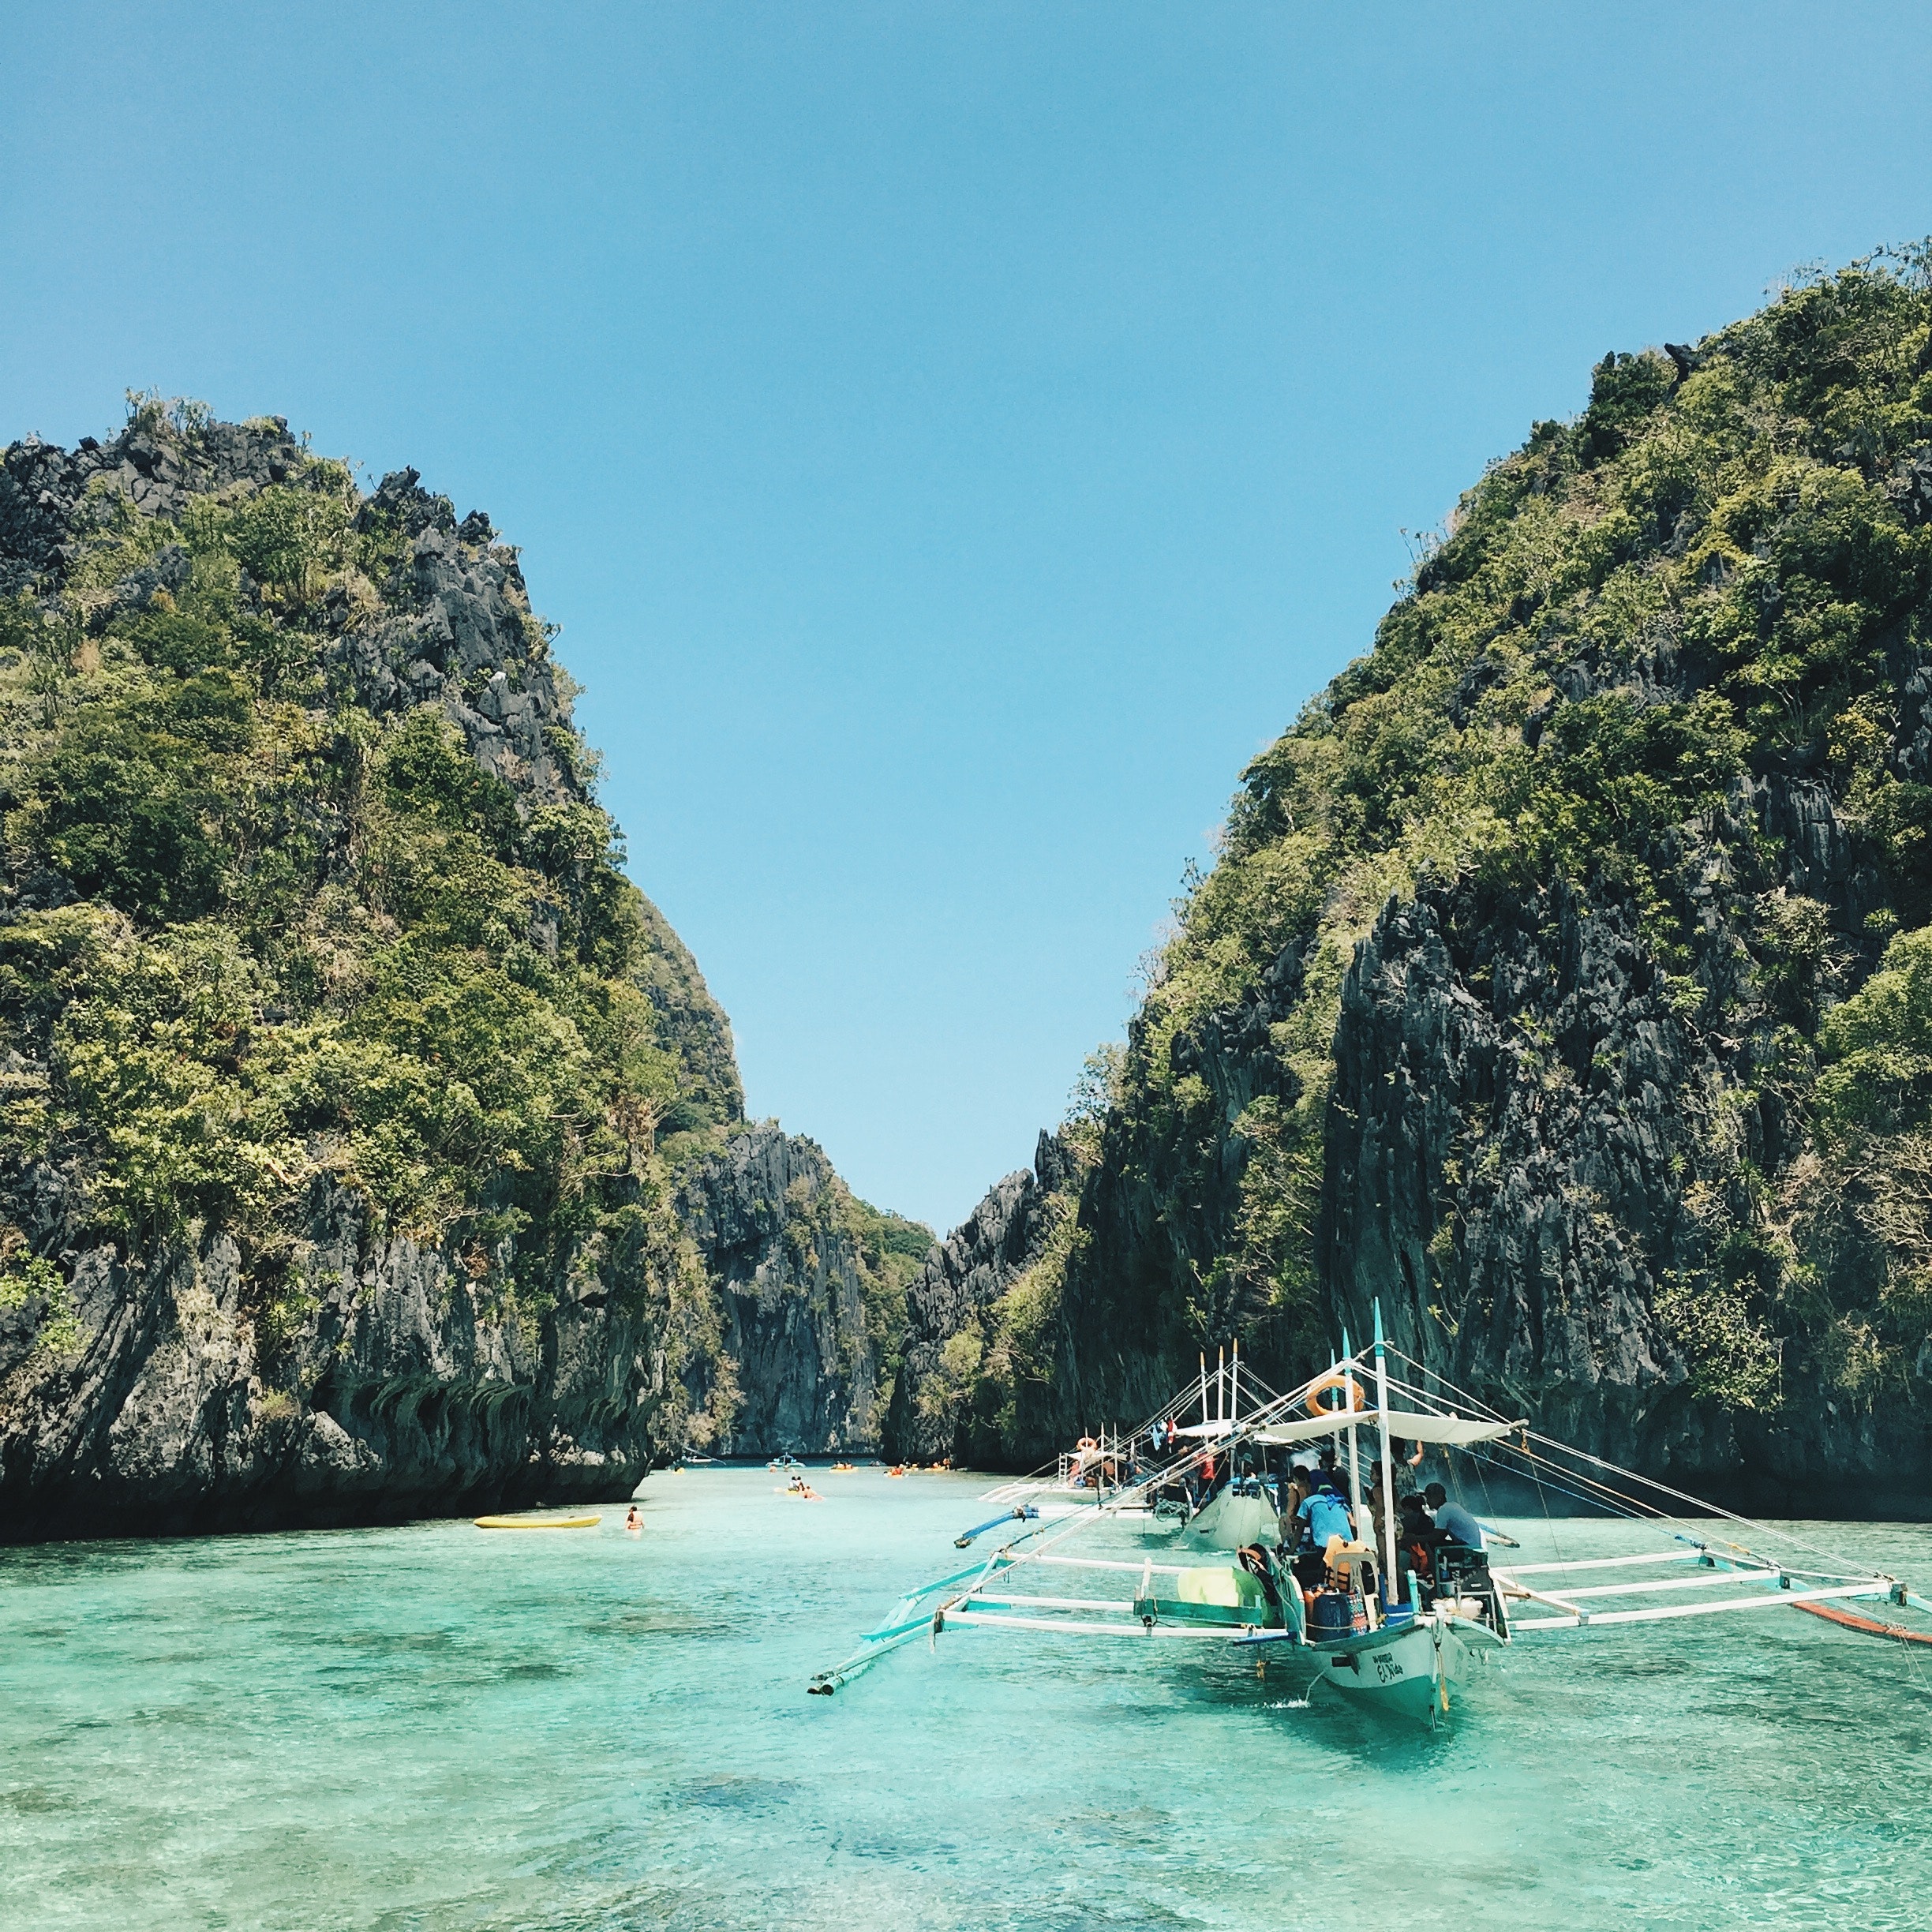 Découvrez l'île de Palawan, une des plus populaires des Philippines